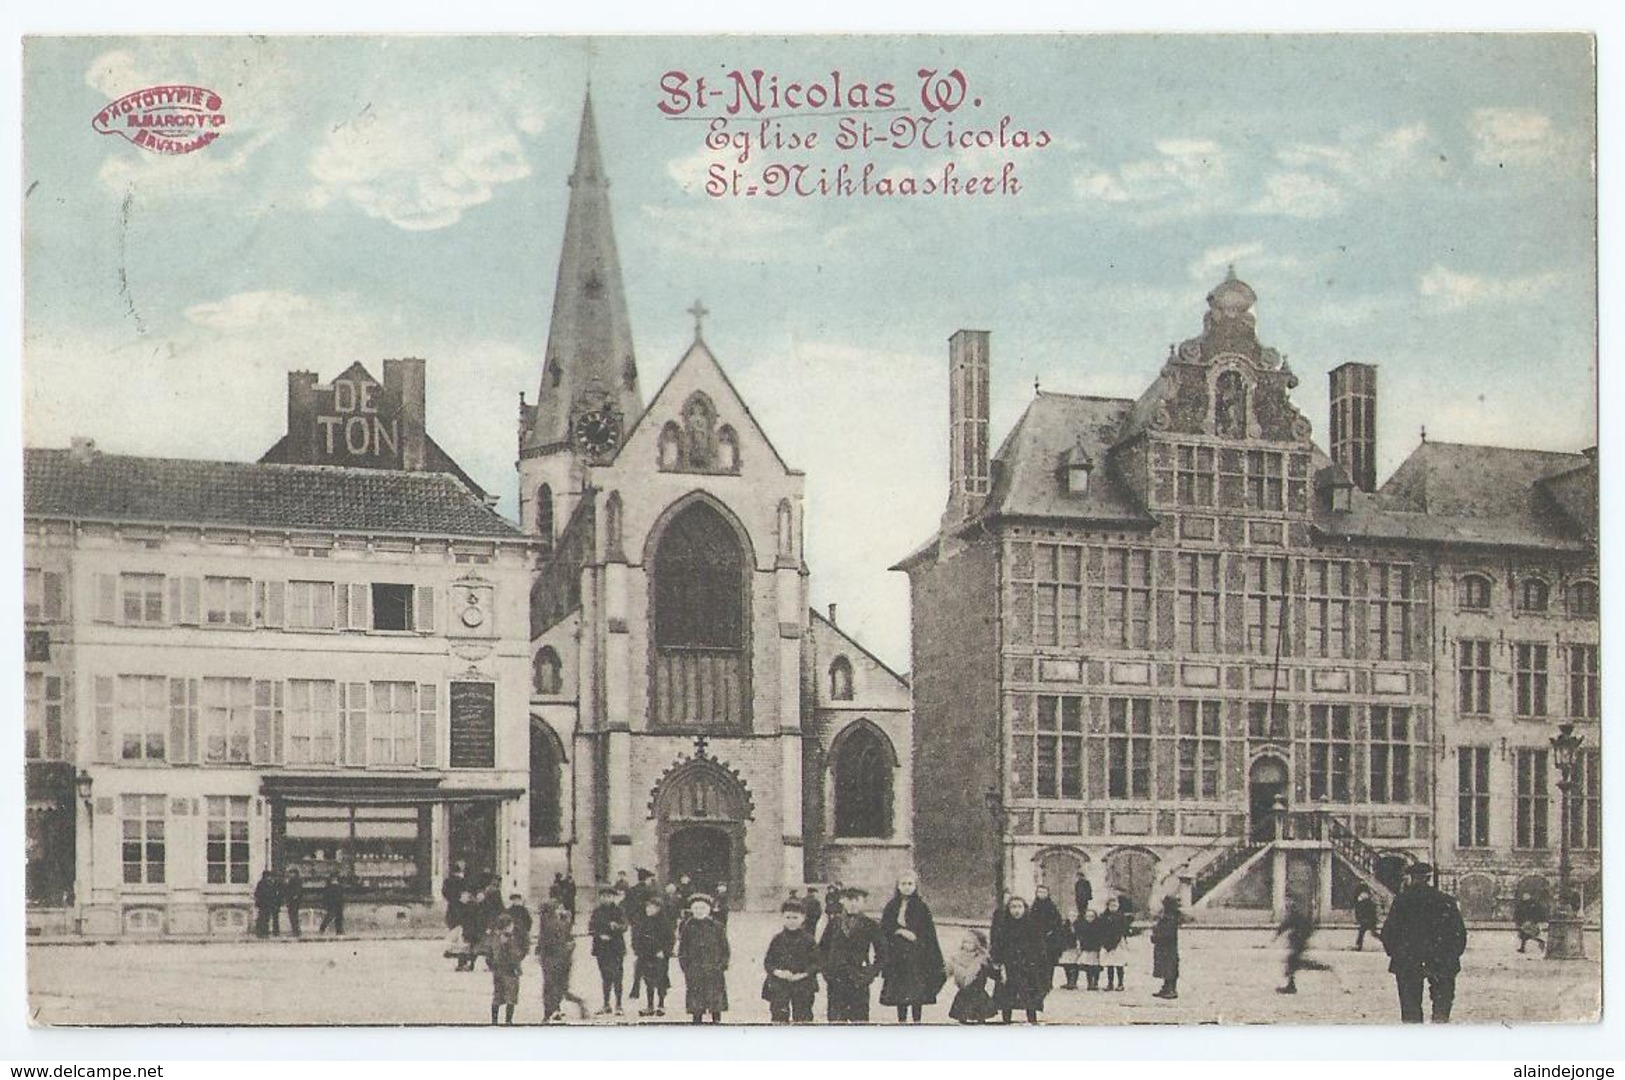 Sint-Niklaas - St-Nicolas W. - Eglise St-Nicolas - St. Niklaaskeerk - M. Marcovici - 1913 - Sint-Niklaas